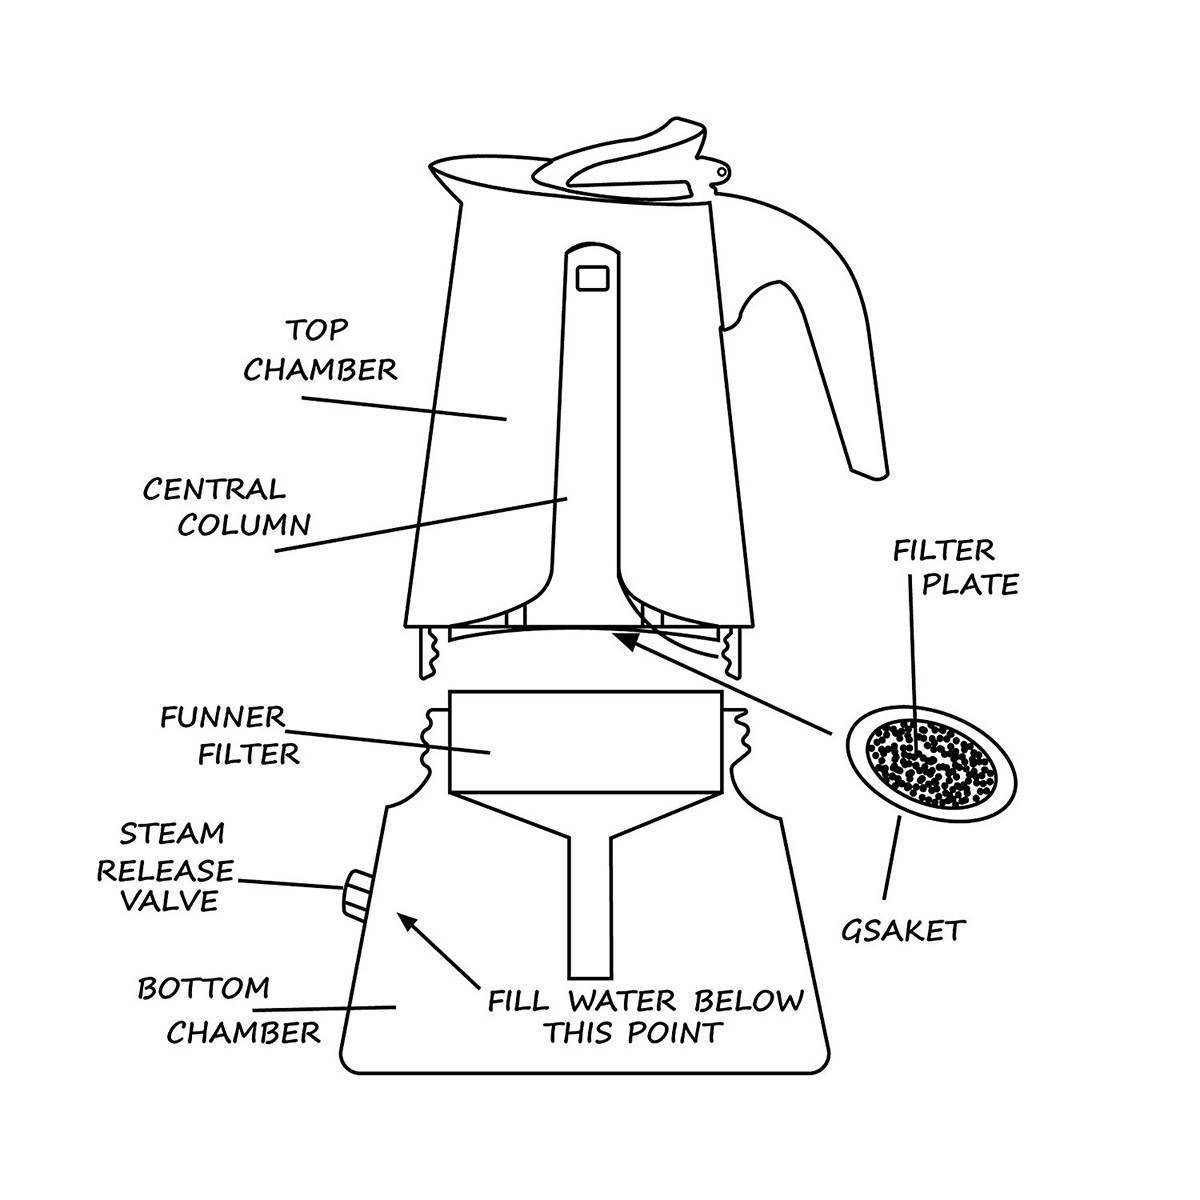 Гейзерная кофеварка: как работает, как ею пользоваться и какую лучше выбрать для дома